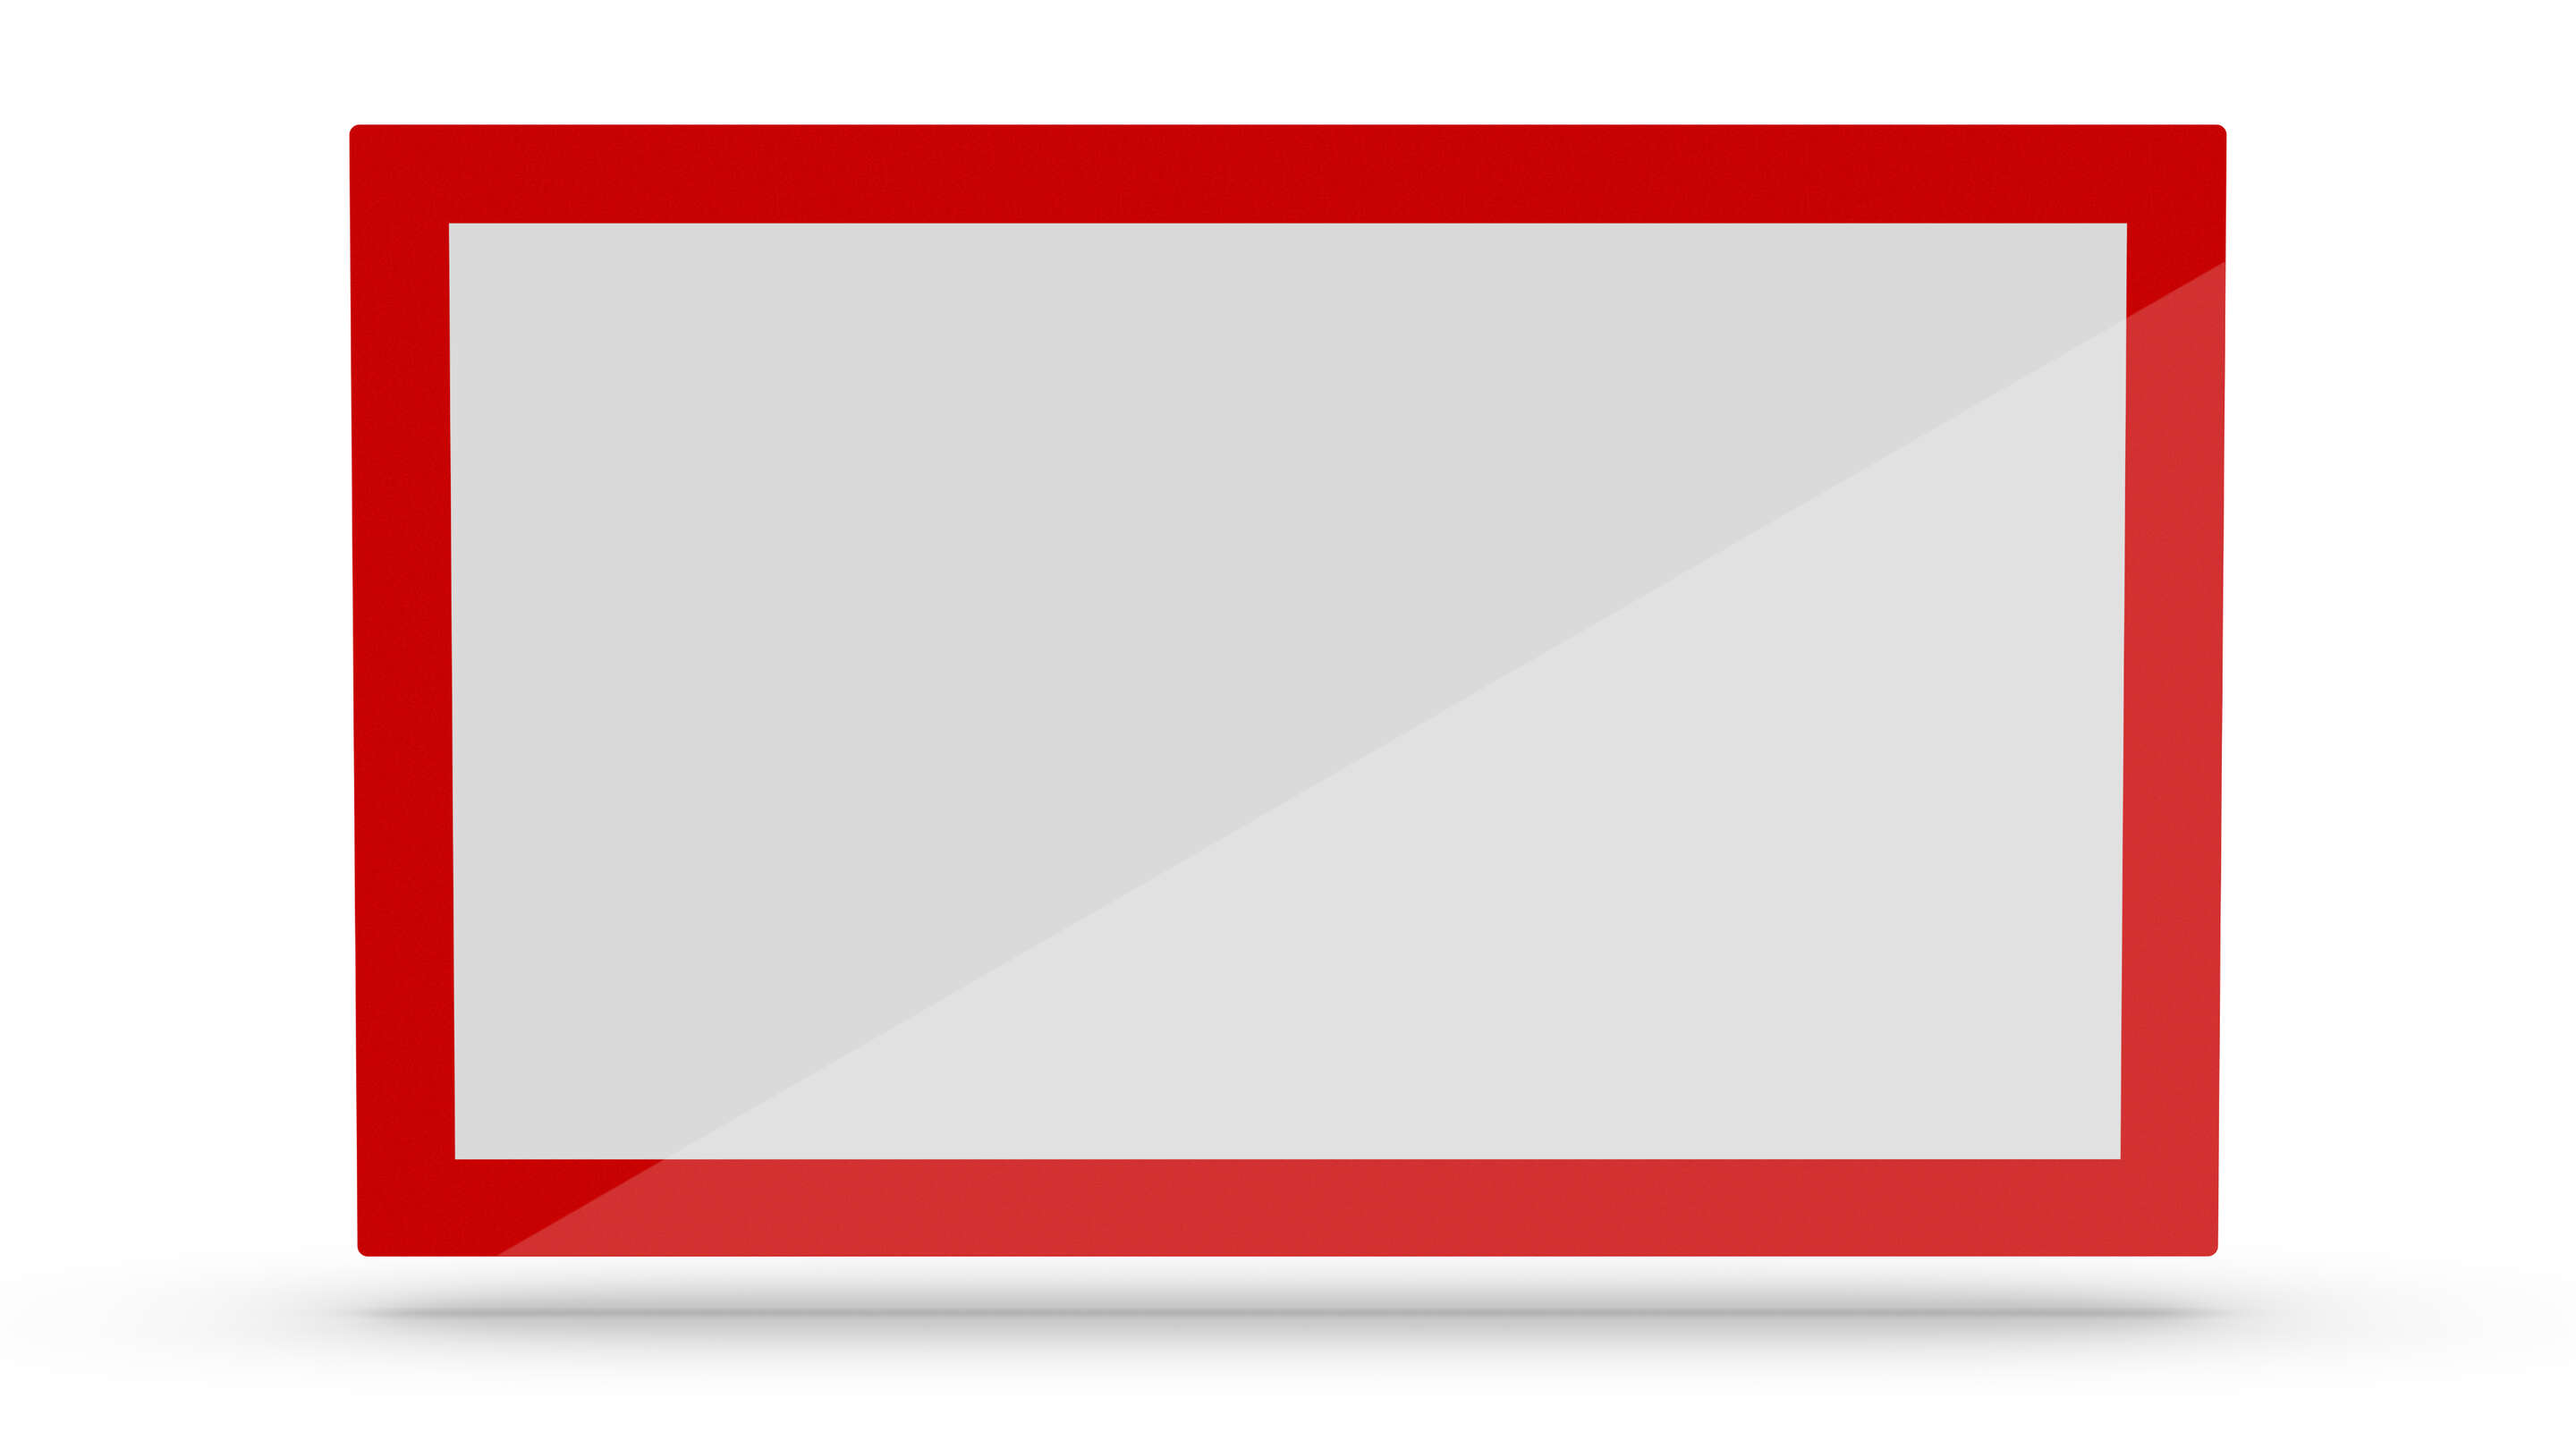 터치 스크린 - 사용자 지정 터치 스크린, 빨간색과 흰색 직사각형 기호